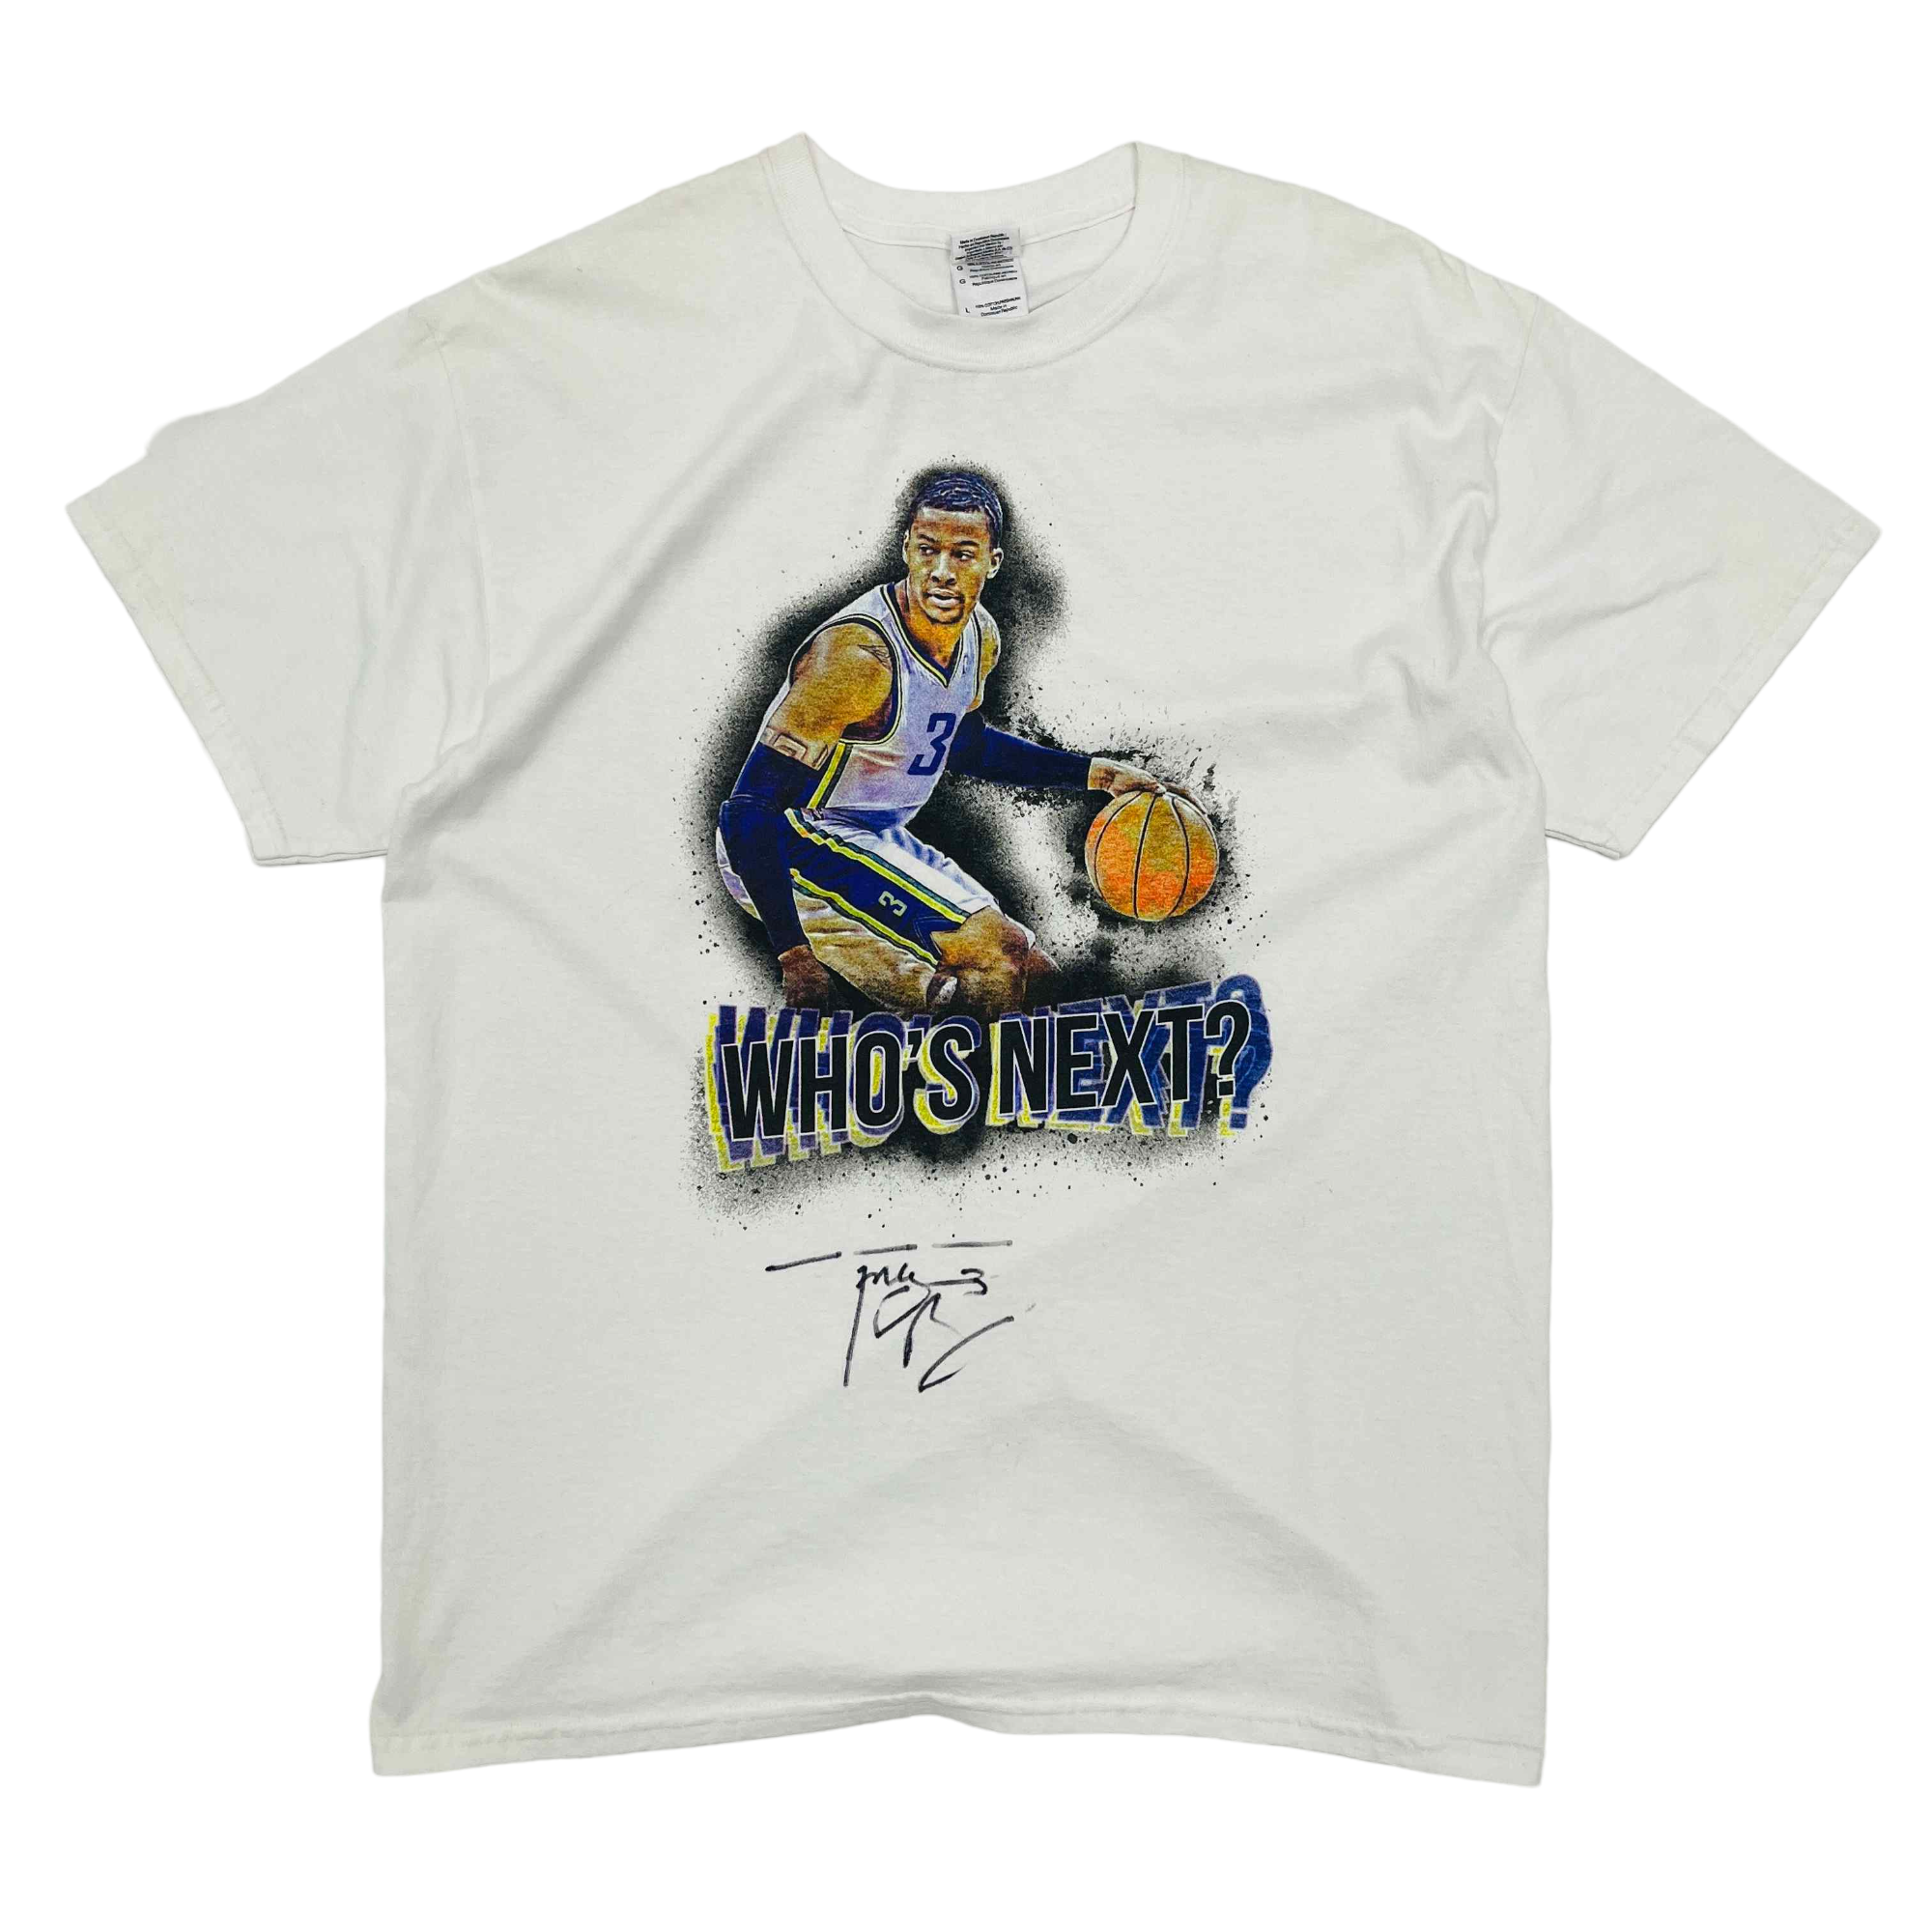 Trey Burke Signed T-Shirt - Large